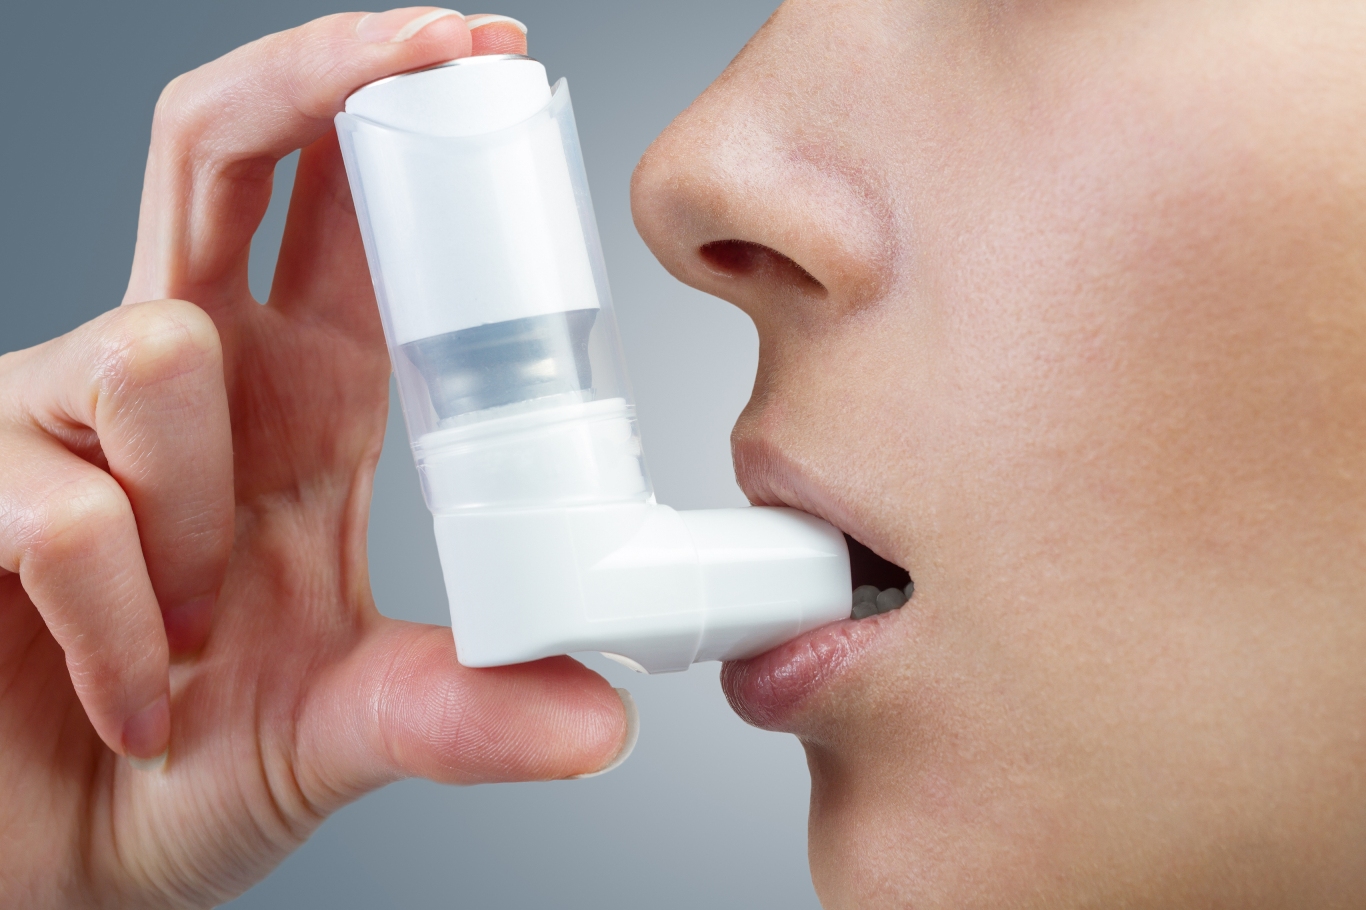 Tire suas dúvidas sobre a asma